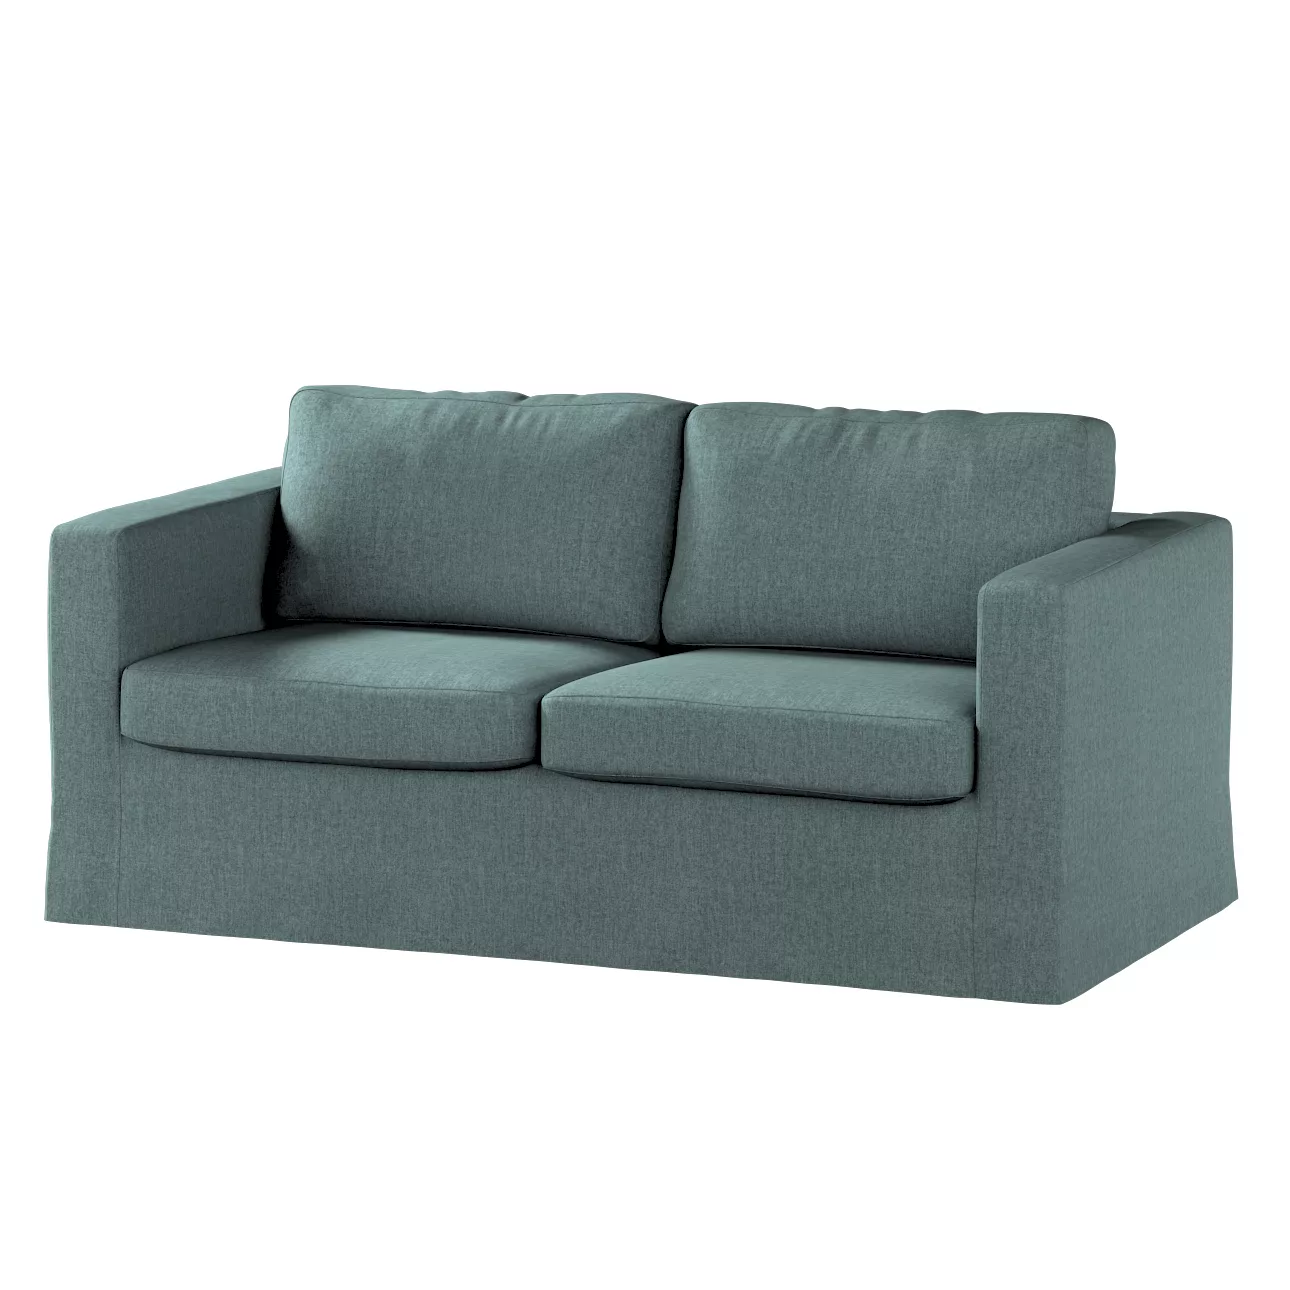 Bezug für Karlstad 2-Sitzer Sofa nicht ausklappbar, lang, grau- blau, Sofah günstig online kaufen